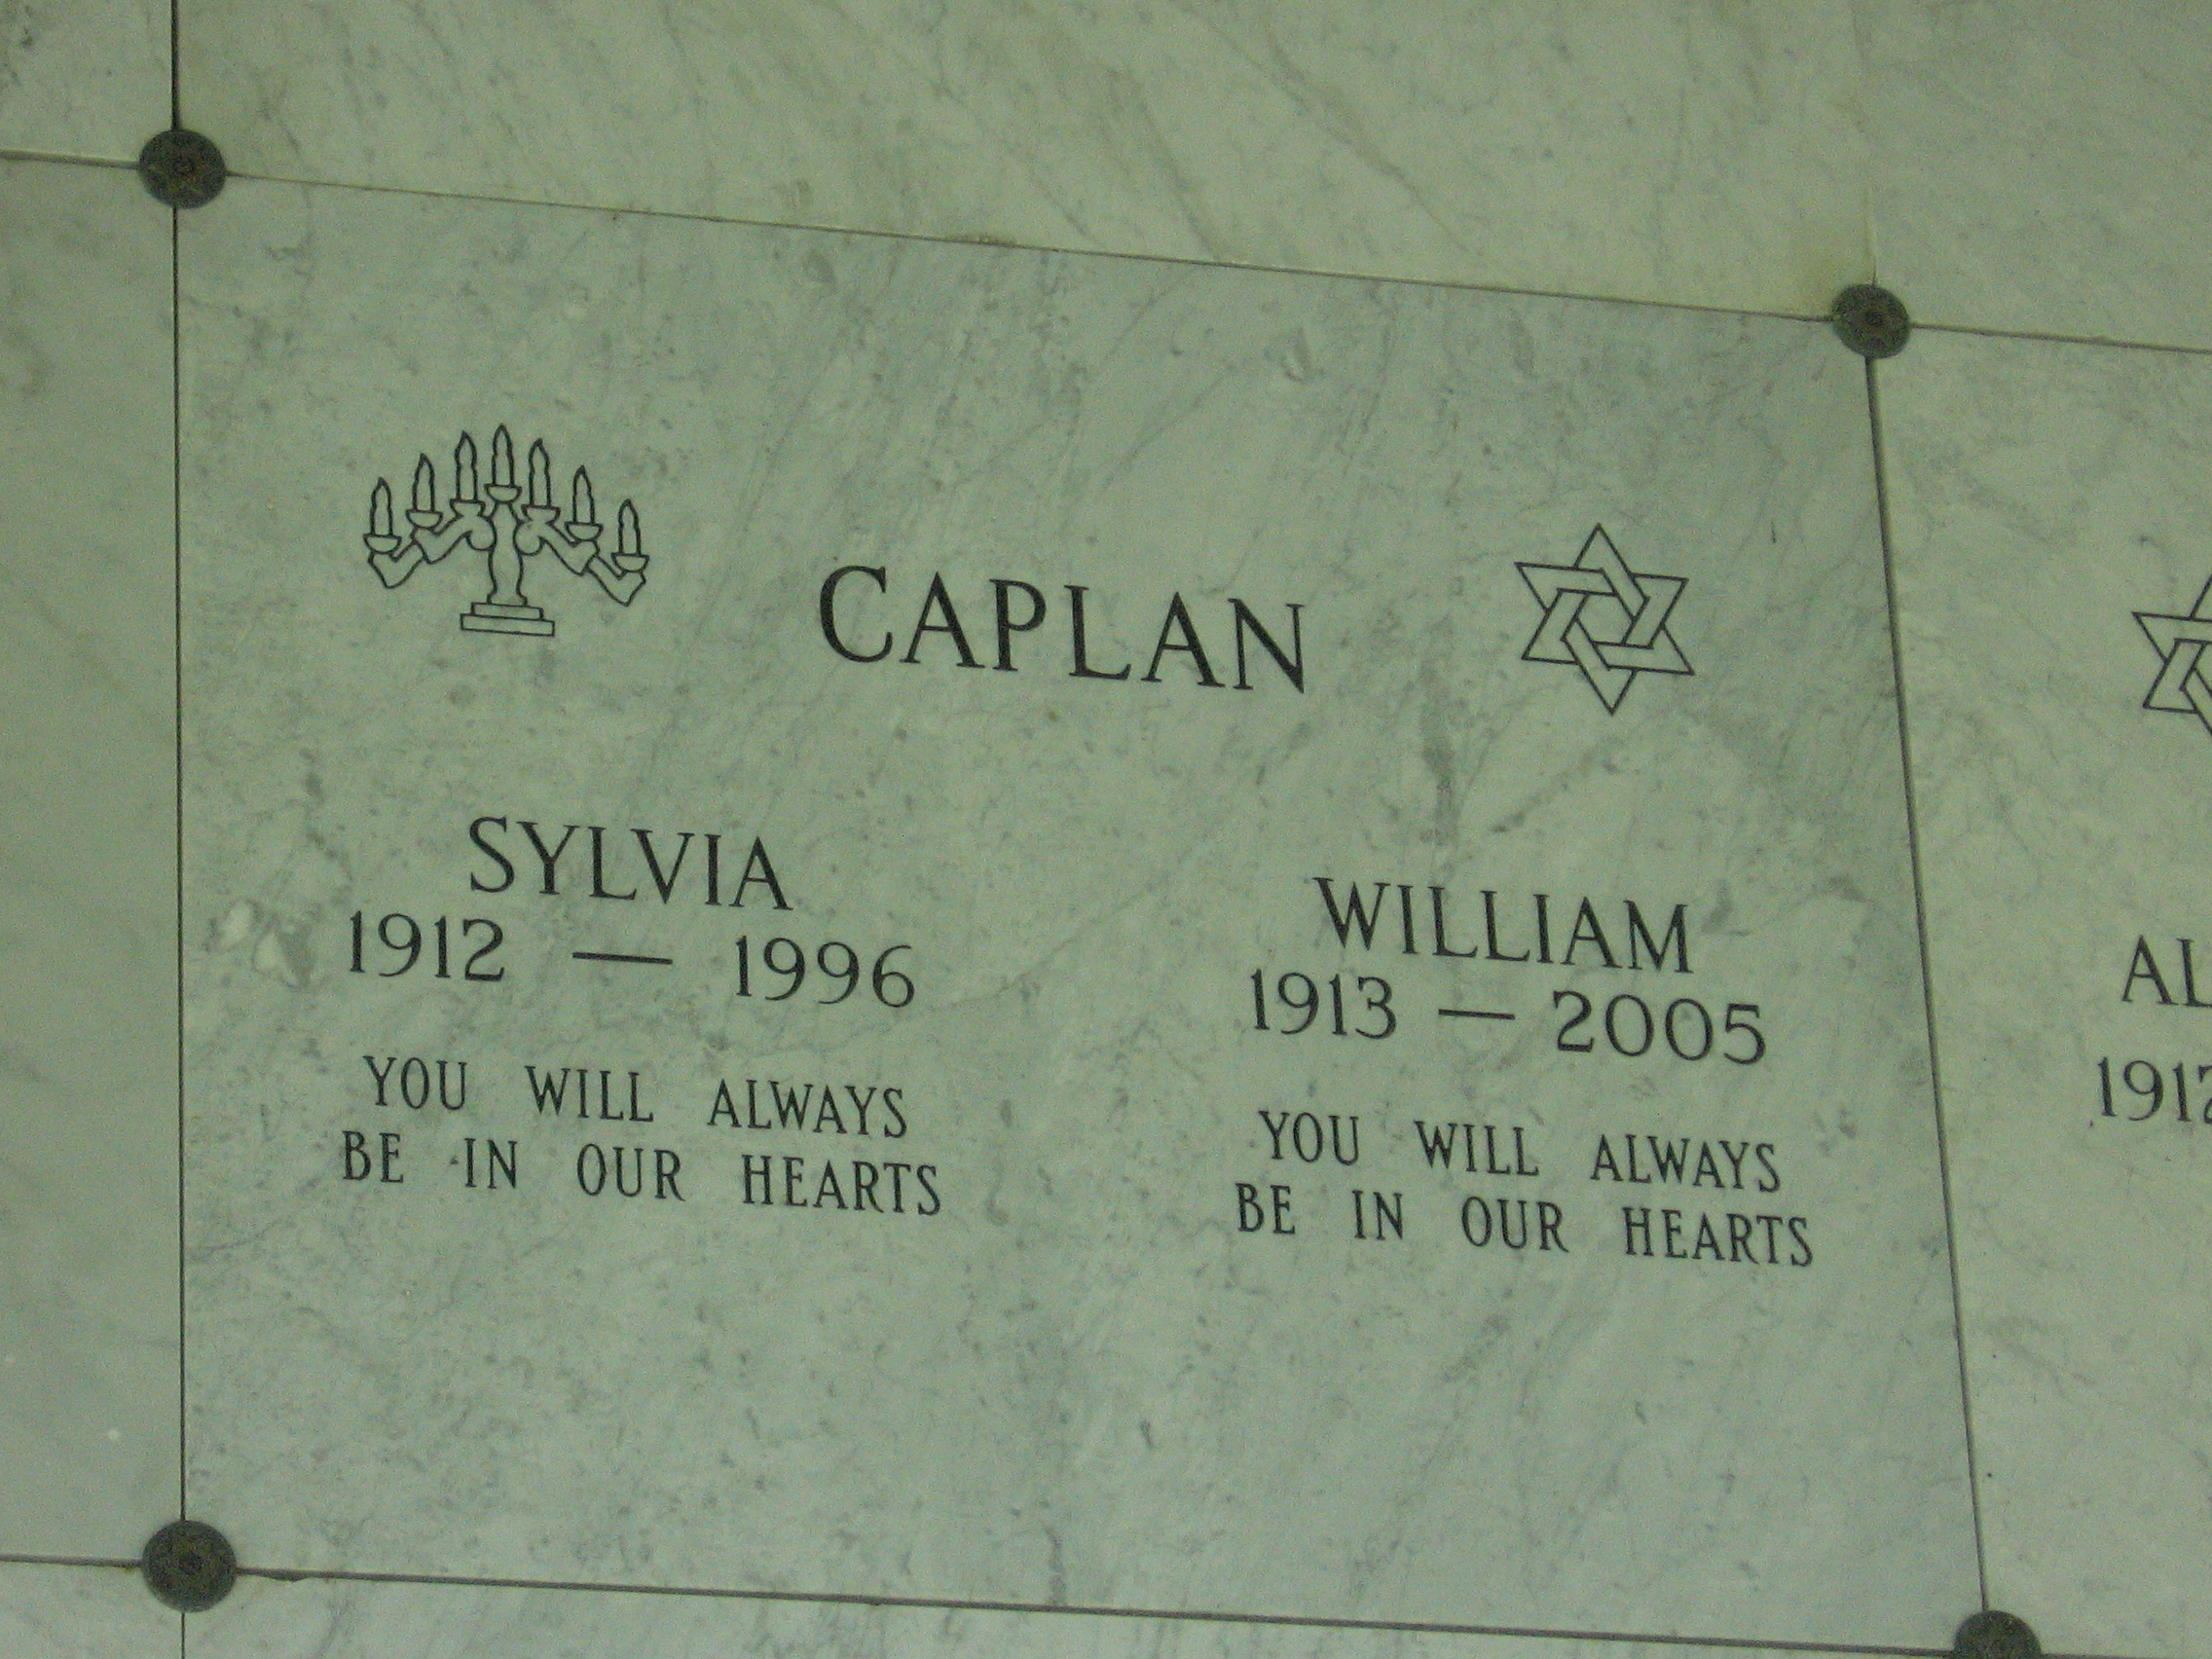 William Caplan